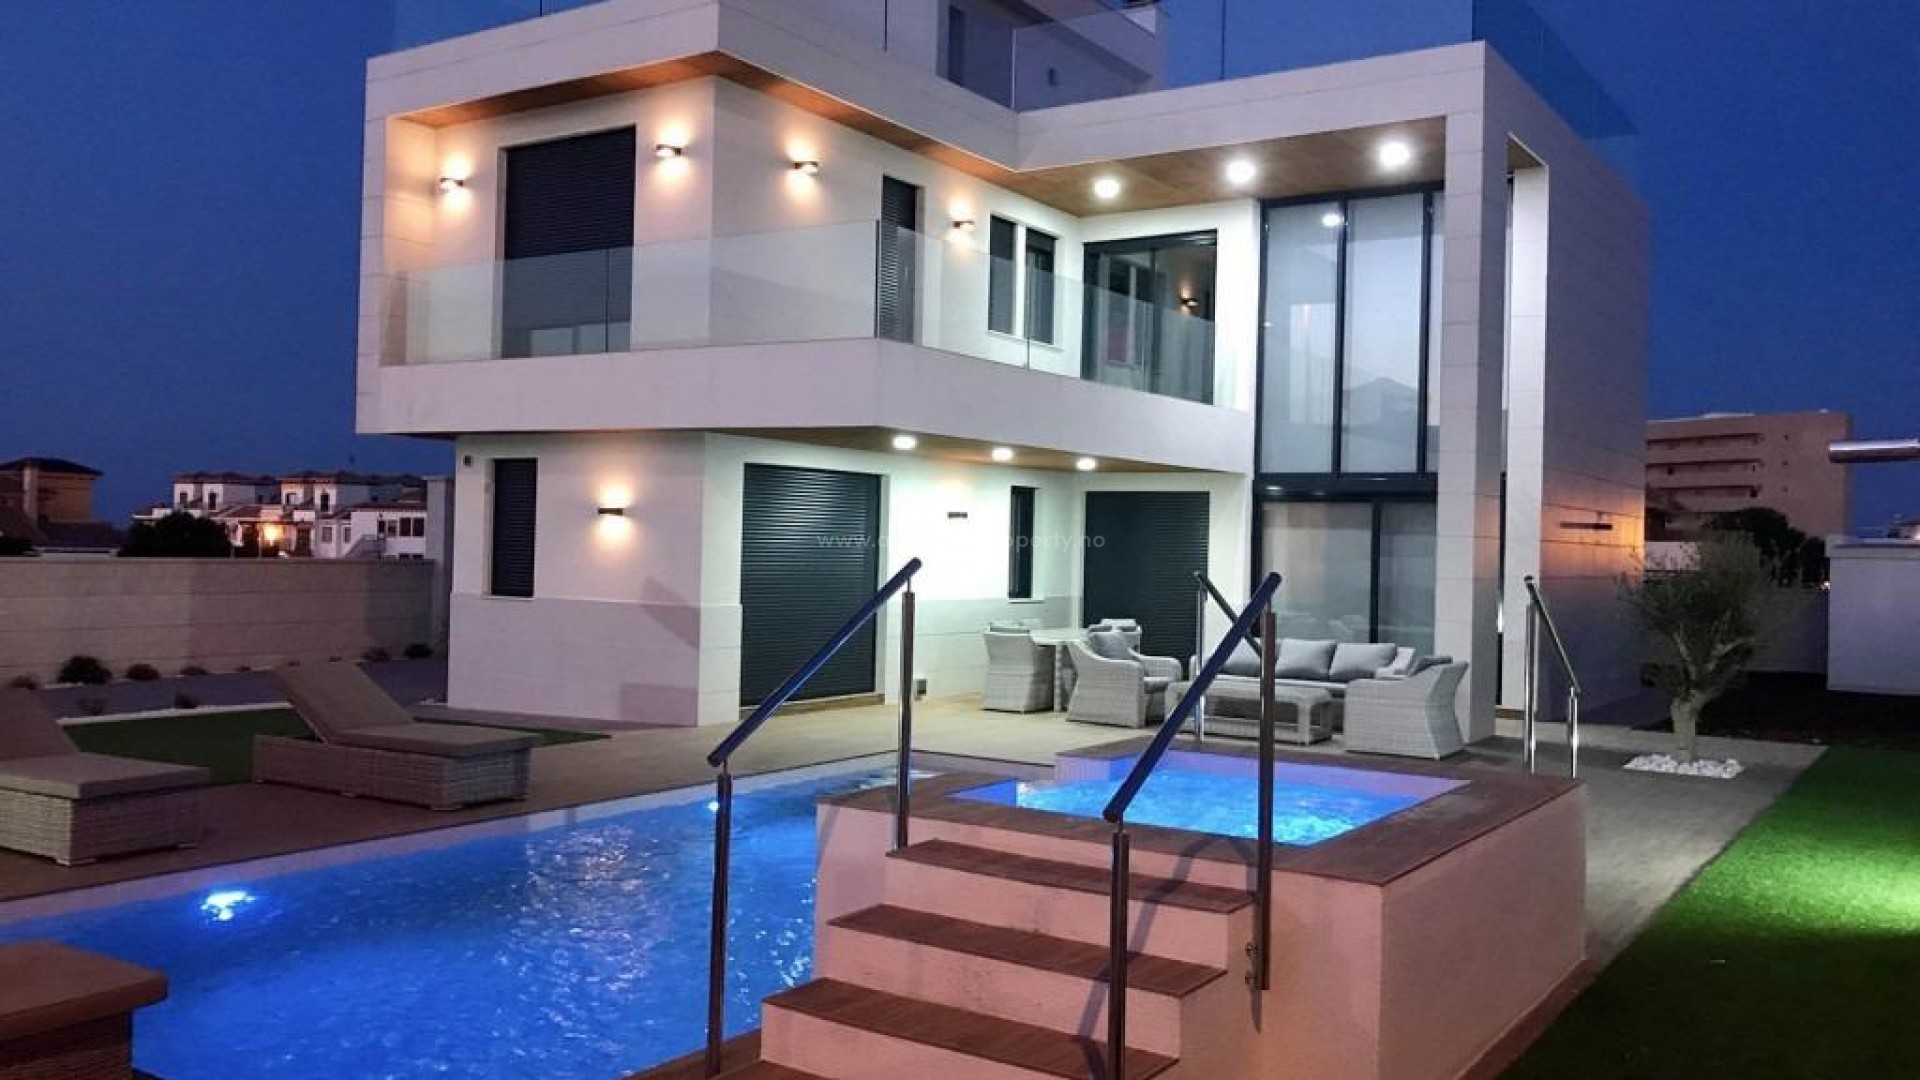 Luksuriøse villaer/hus i badebyen Campoamor på Orihuela Costa, 700m fra strand, 3 soverom, 3 bad. Nær 4 mesterskaps-golfbaner og resorter.